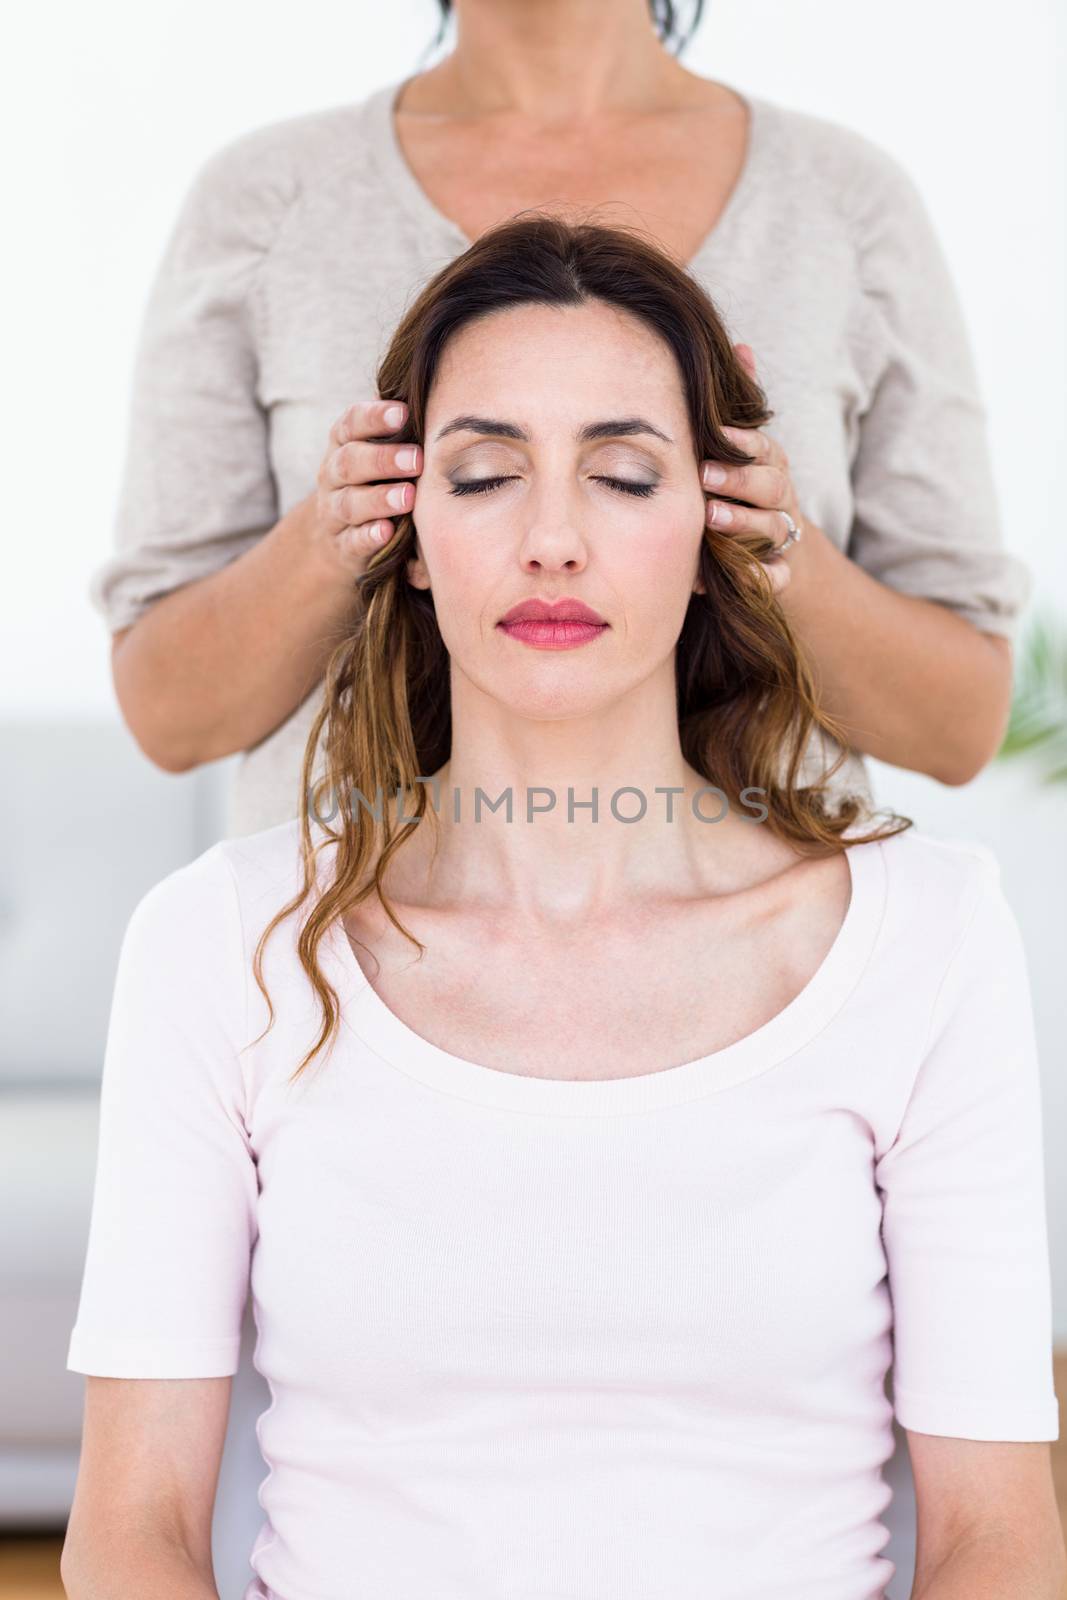 Calm woman receiving reiki treatment on white background